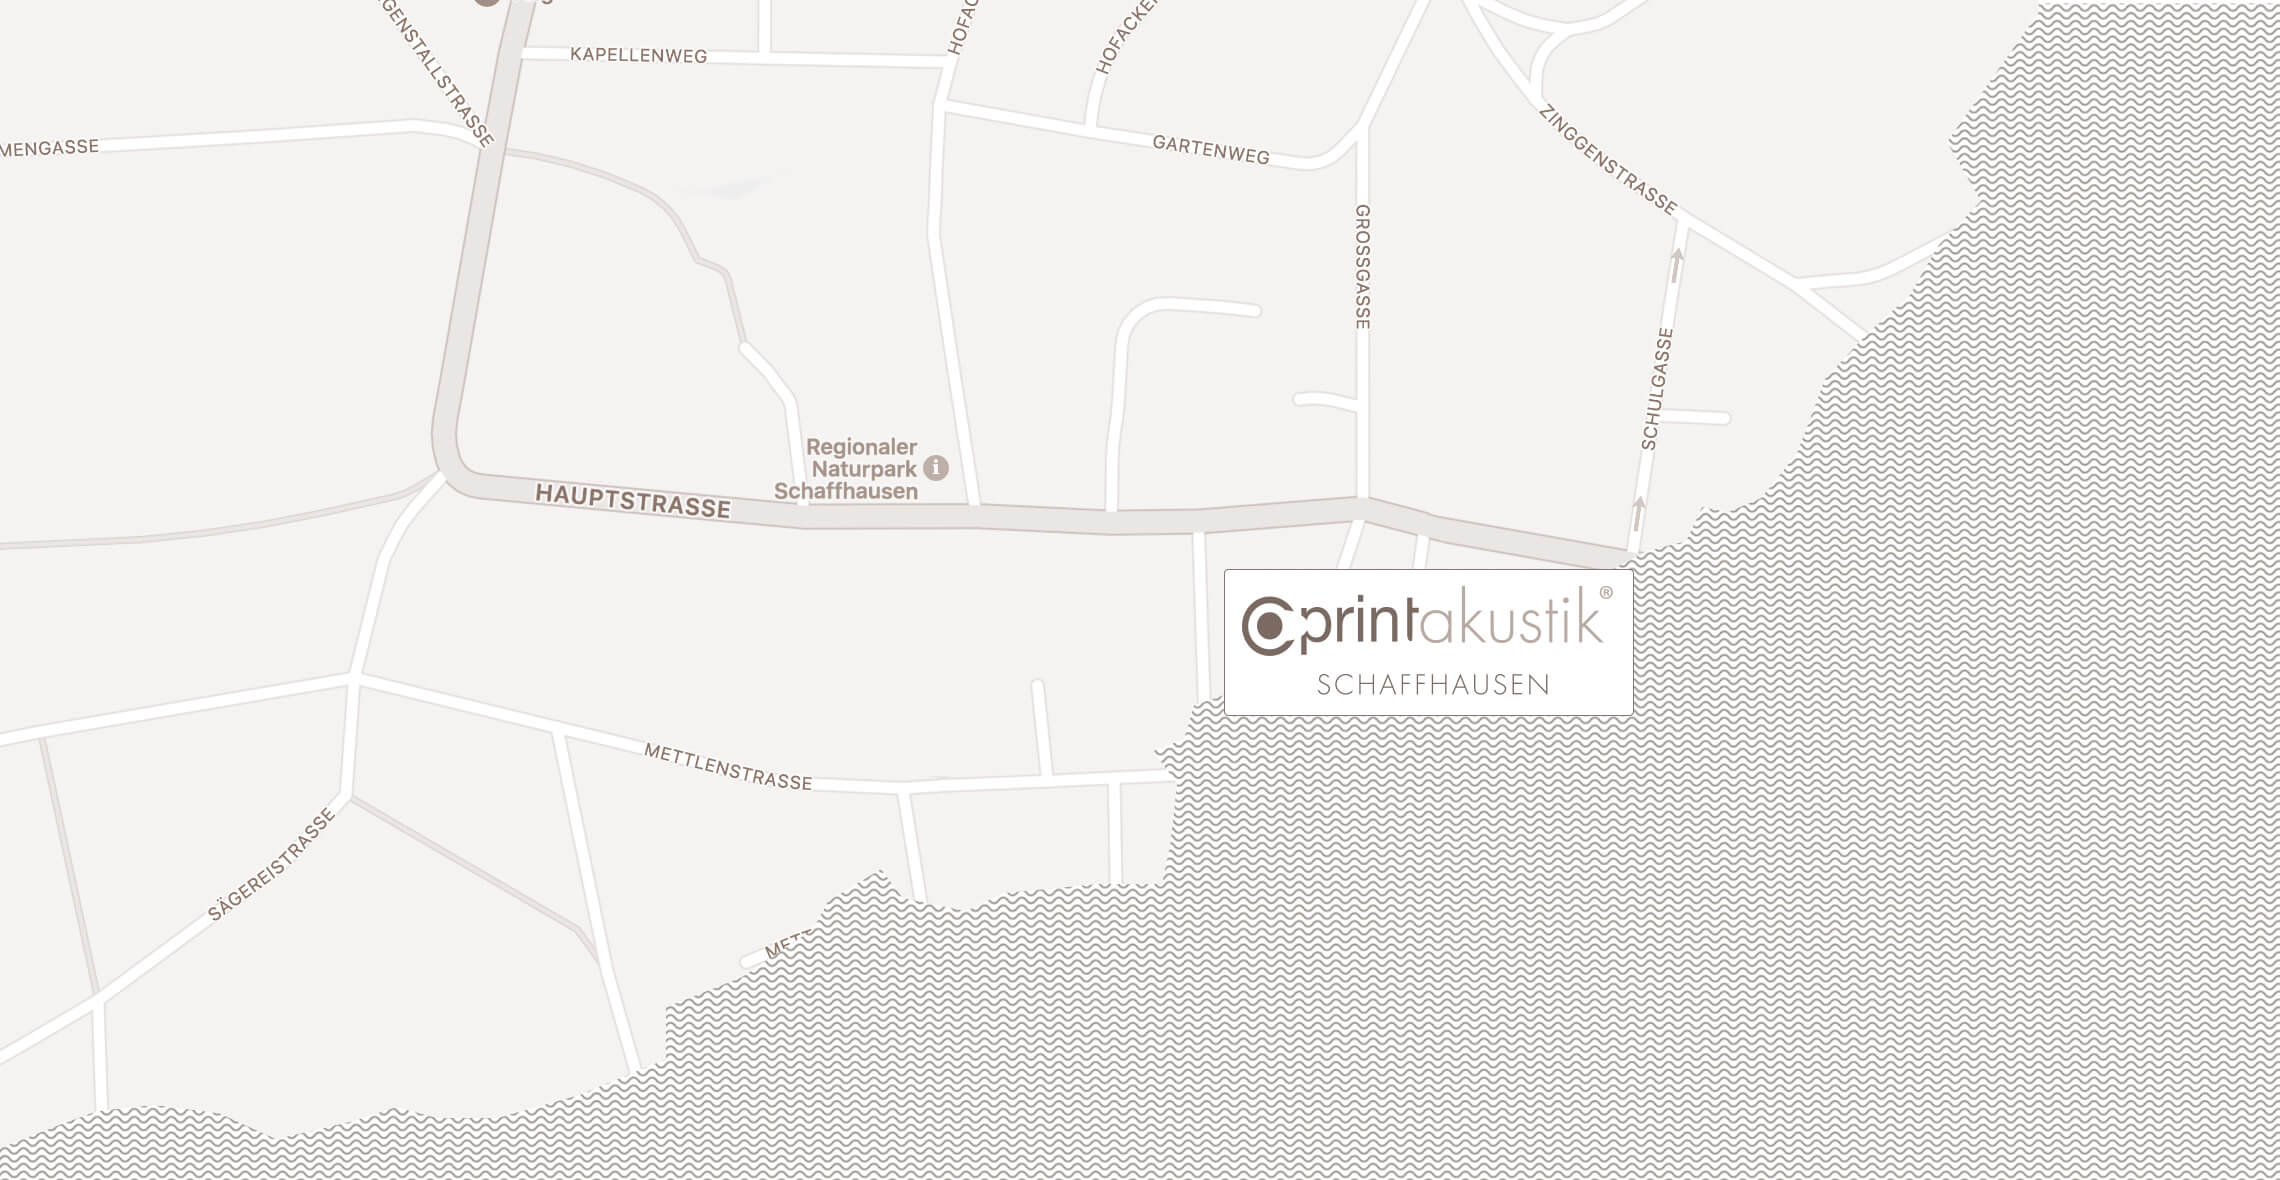 printakustik_maps